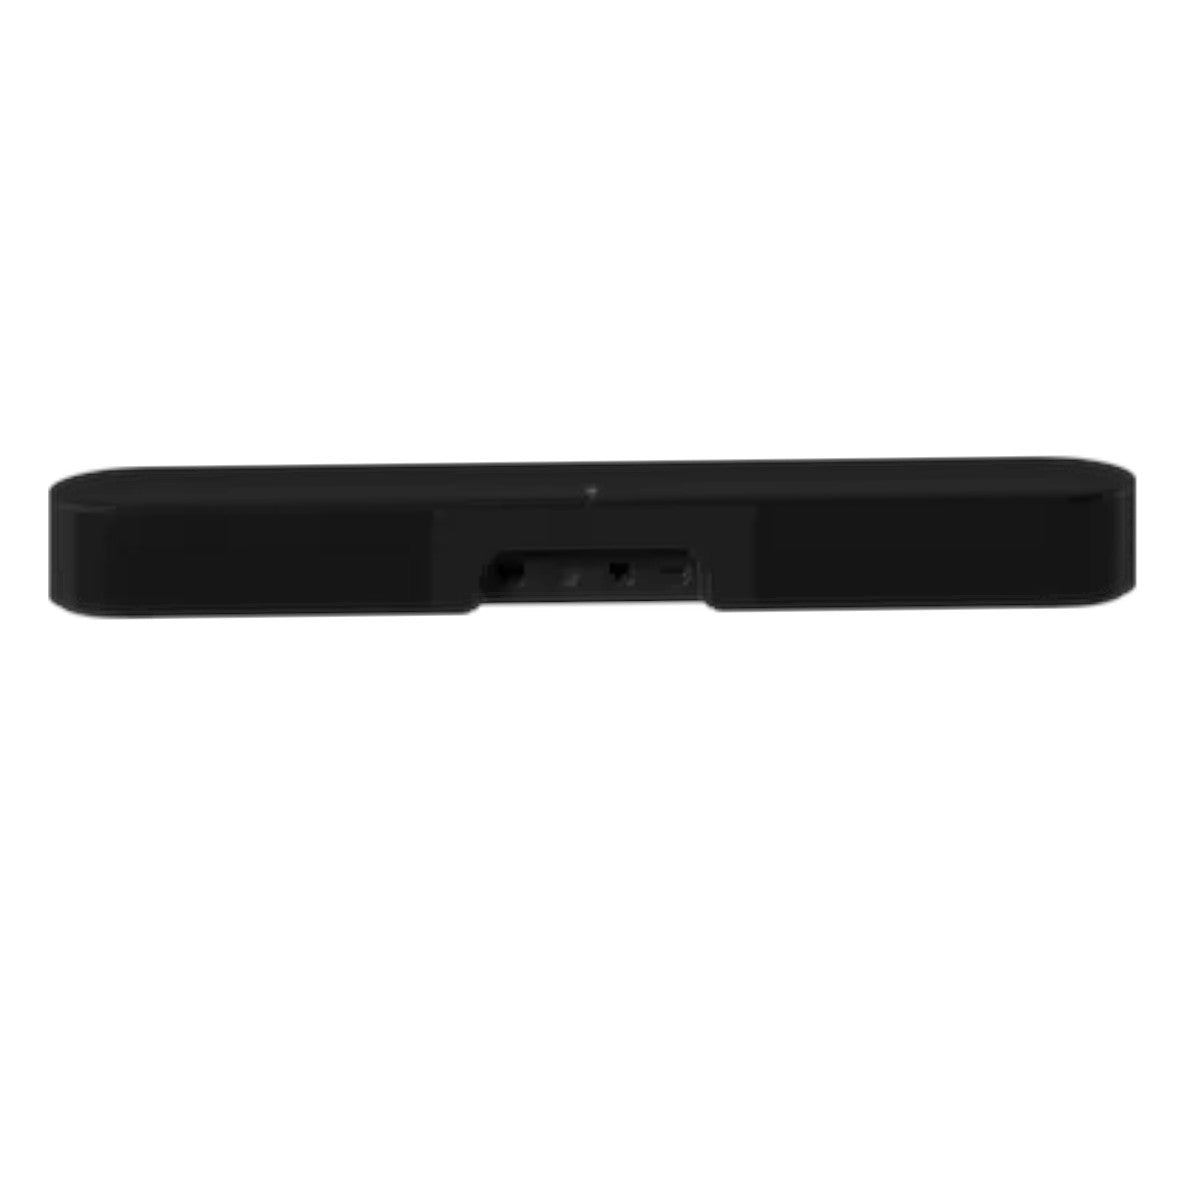 Sonos Beam Gen 2 Compact Smart TV Soundbar (Black) - Rear View